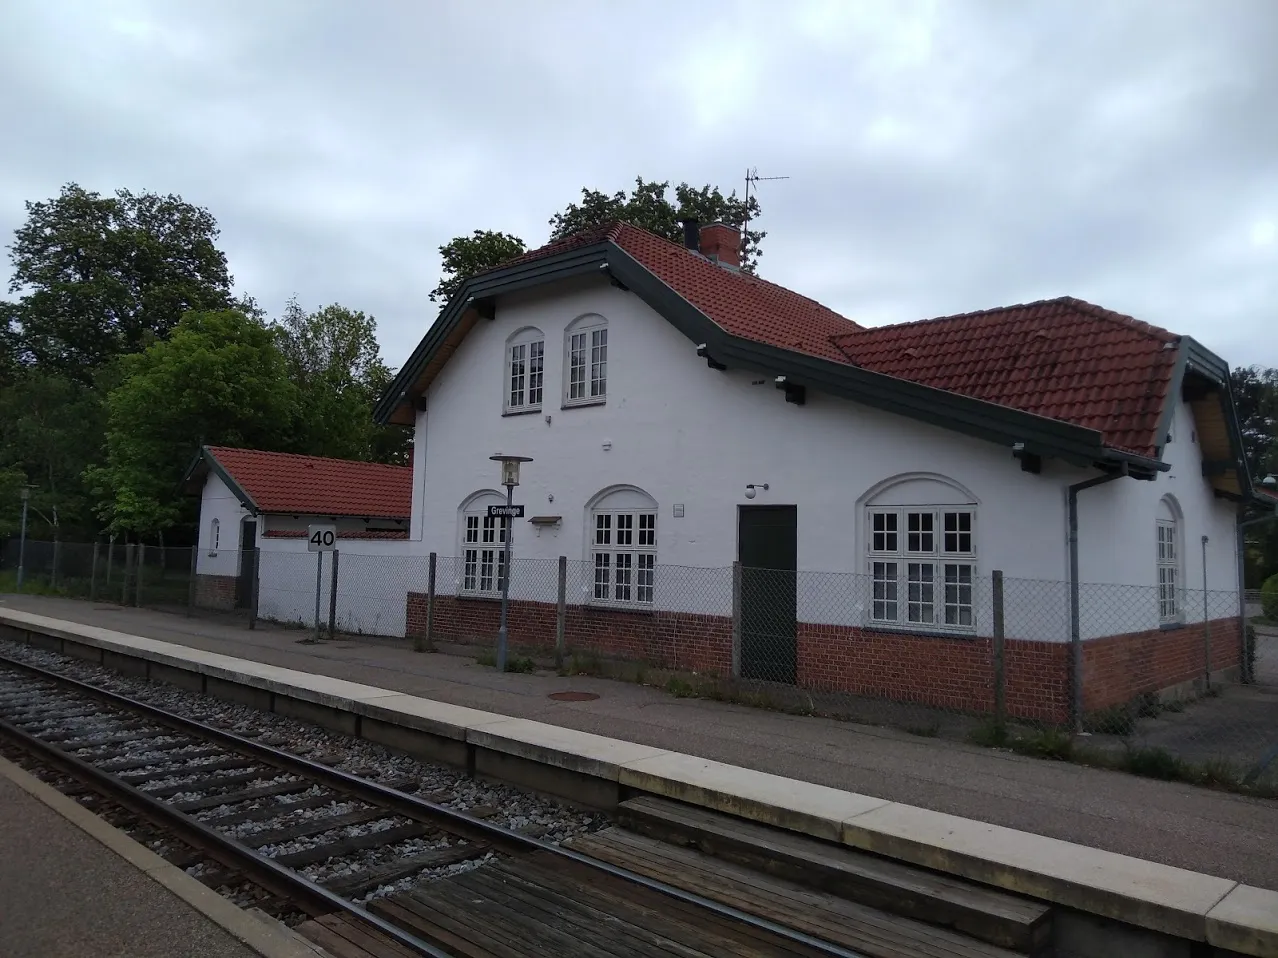 Photo showing: Grevinge Station is a station on the Odsherred line, connecting Holbæk with Nykøbing Sjælland